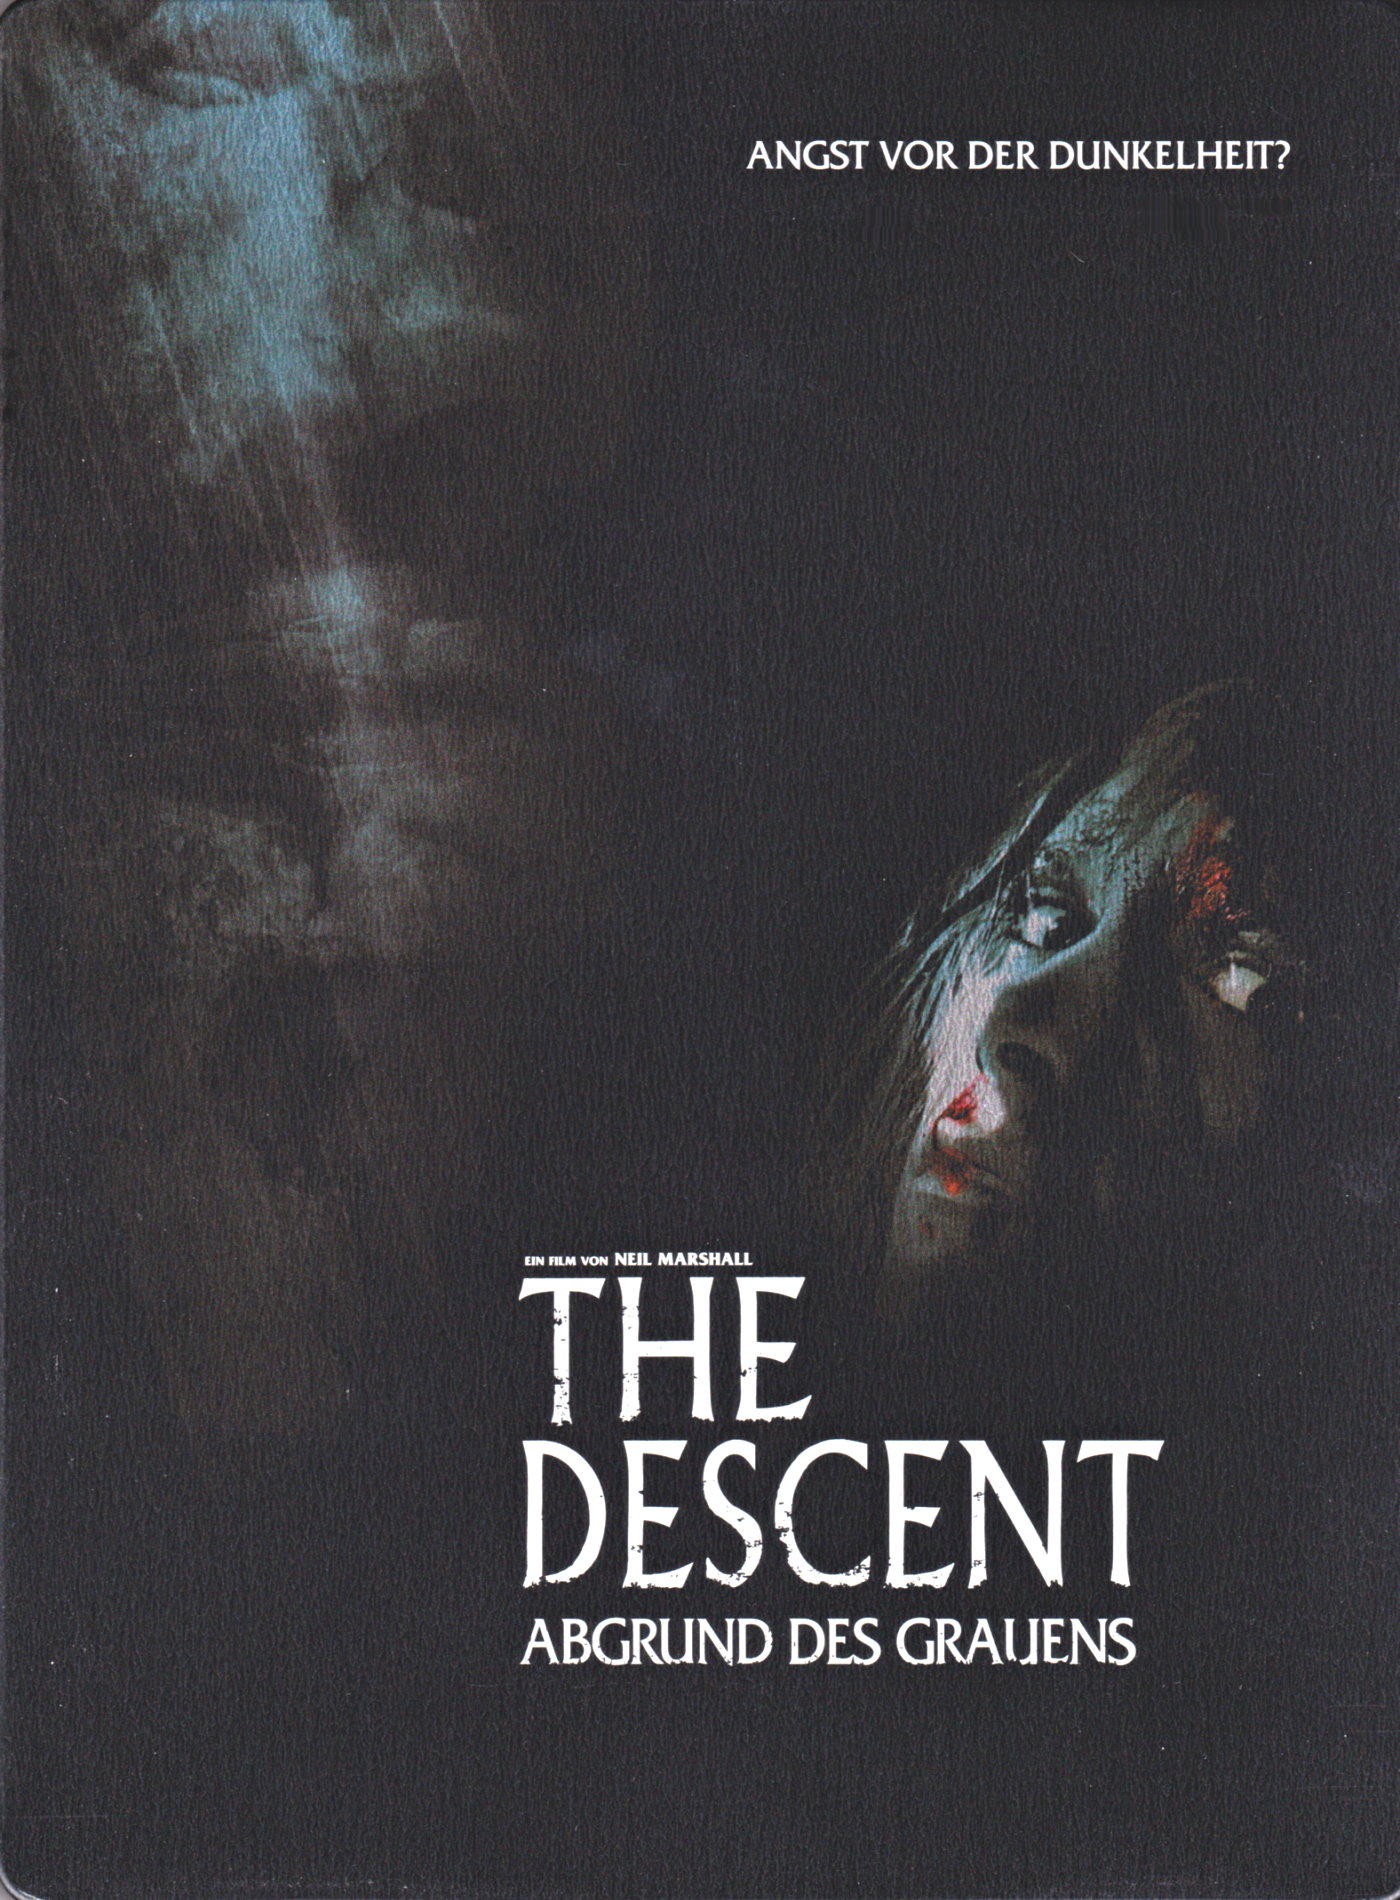 Cover - The Descent - Abgrund des Grauens.jpg